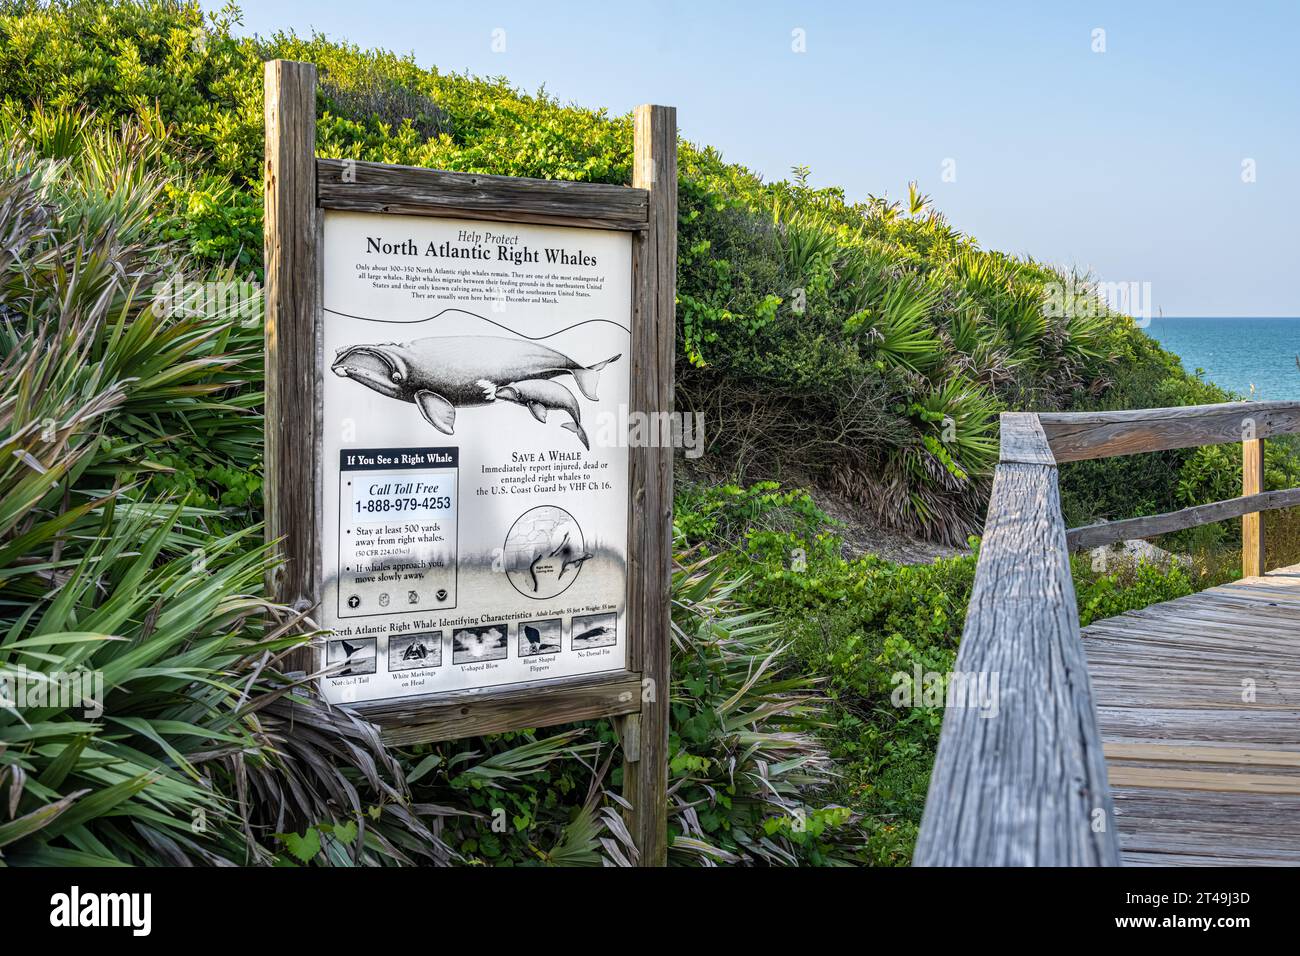 Informationsschild entlang des öffentlichen Strandzugangs in Ponte Vedra Beach, Florida, über nordatlantische Rechtwale. (USA) Stockfoto